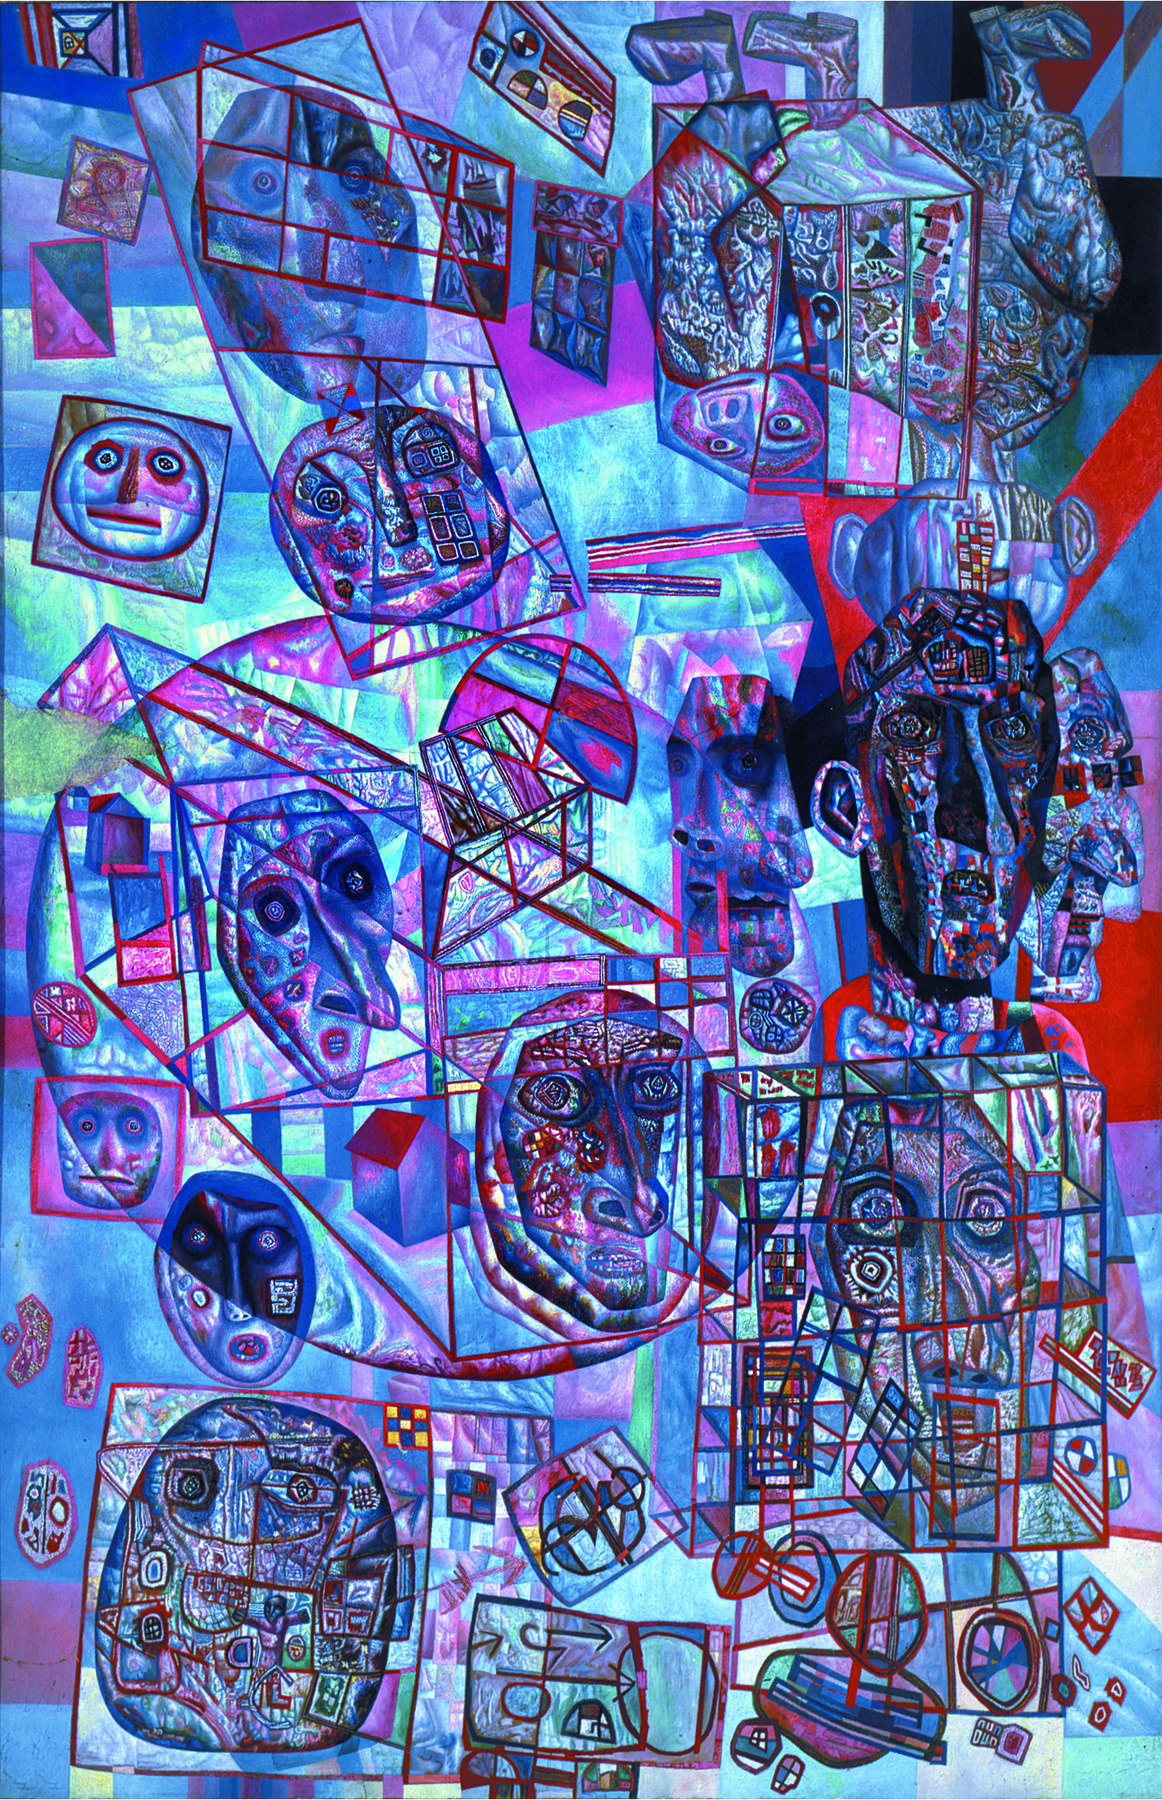 Pintura. Fundo em tons de azul-claro e azul-escuro, quadrados de contorno vermelho. Desenhos de rostos de fórmas variadas, cabeças de pequeno e médio tamanhos, arredondadas e ovaladas. No canto superior direito, o rosto de um homem parece estar de cabeça para baixo. Entre os rostos representados, há formas geométricas diversas de contornos vermelhos, círculos, quadrados, retângulos. As formas se sobrepõem em algumas partes da tela, remetendo a uma paisagem imaginária, subjetiva, e pouco realista.